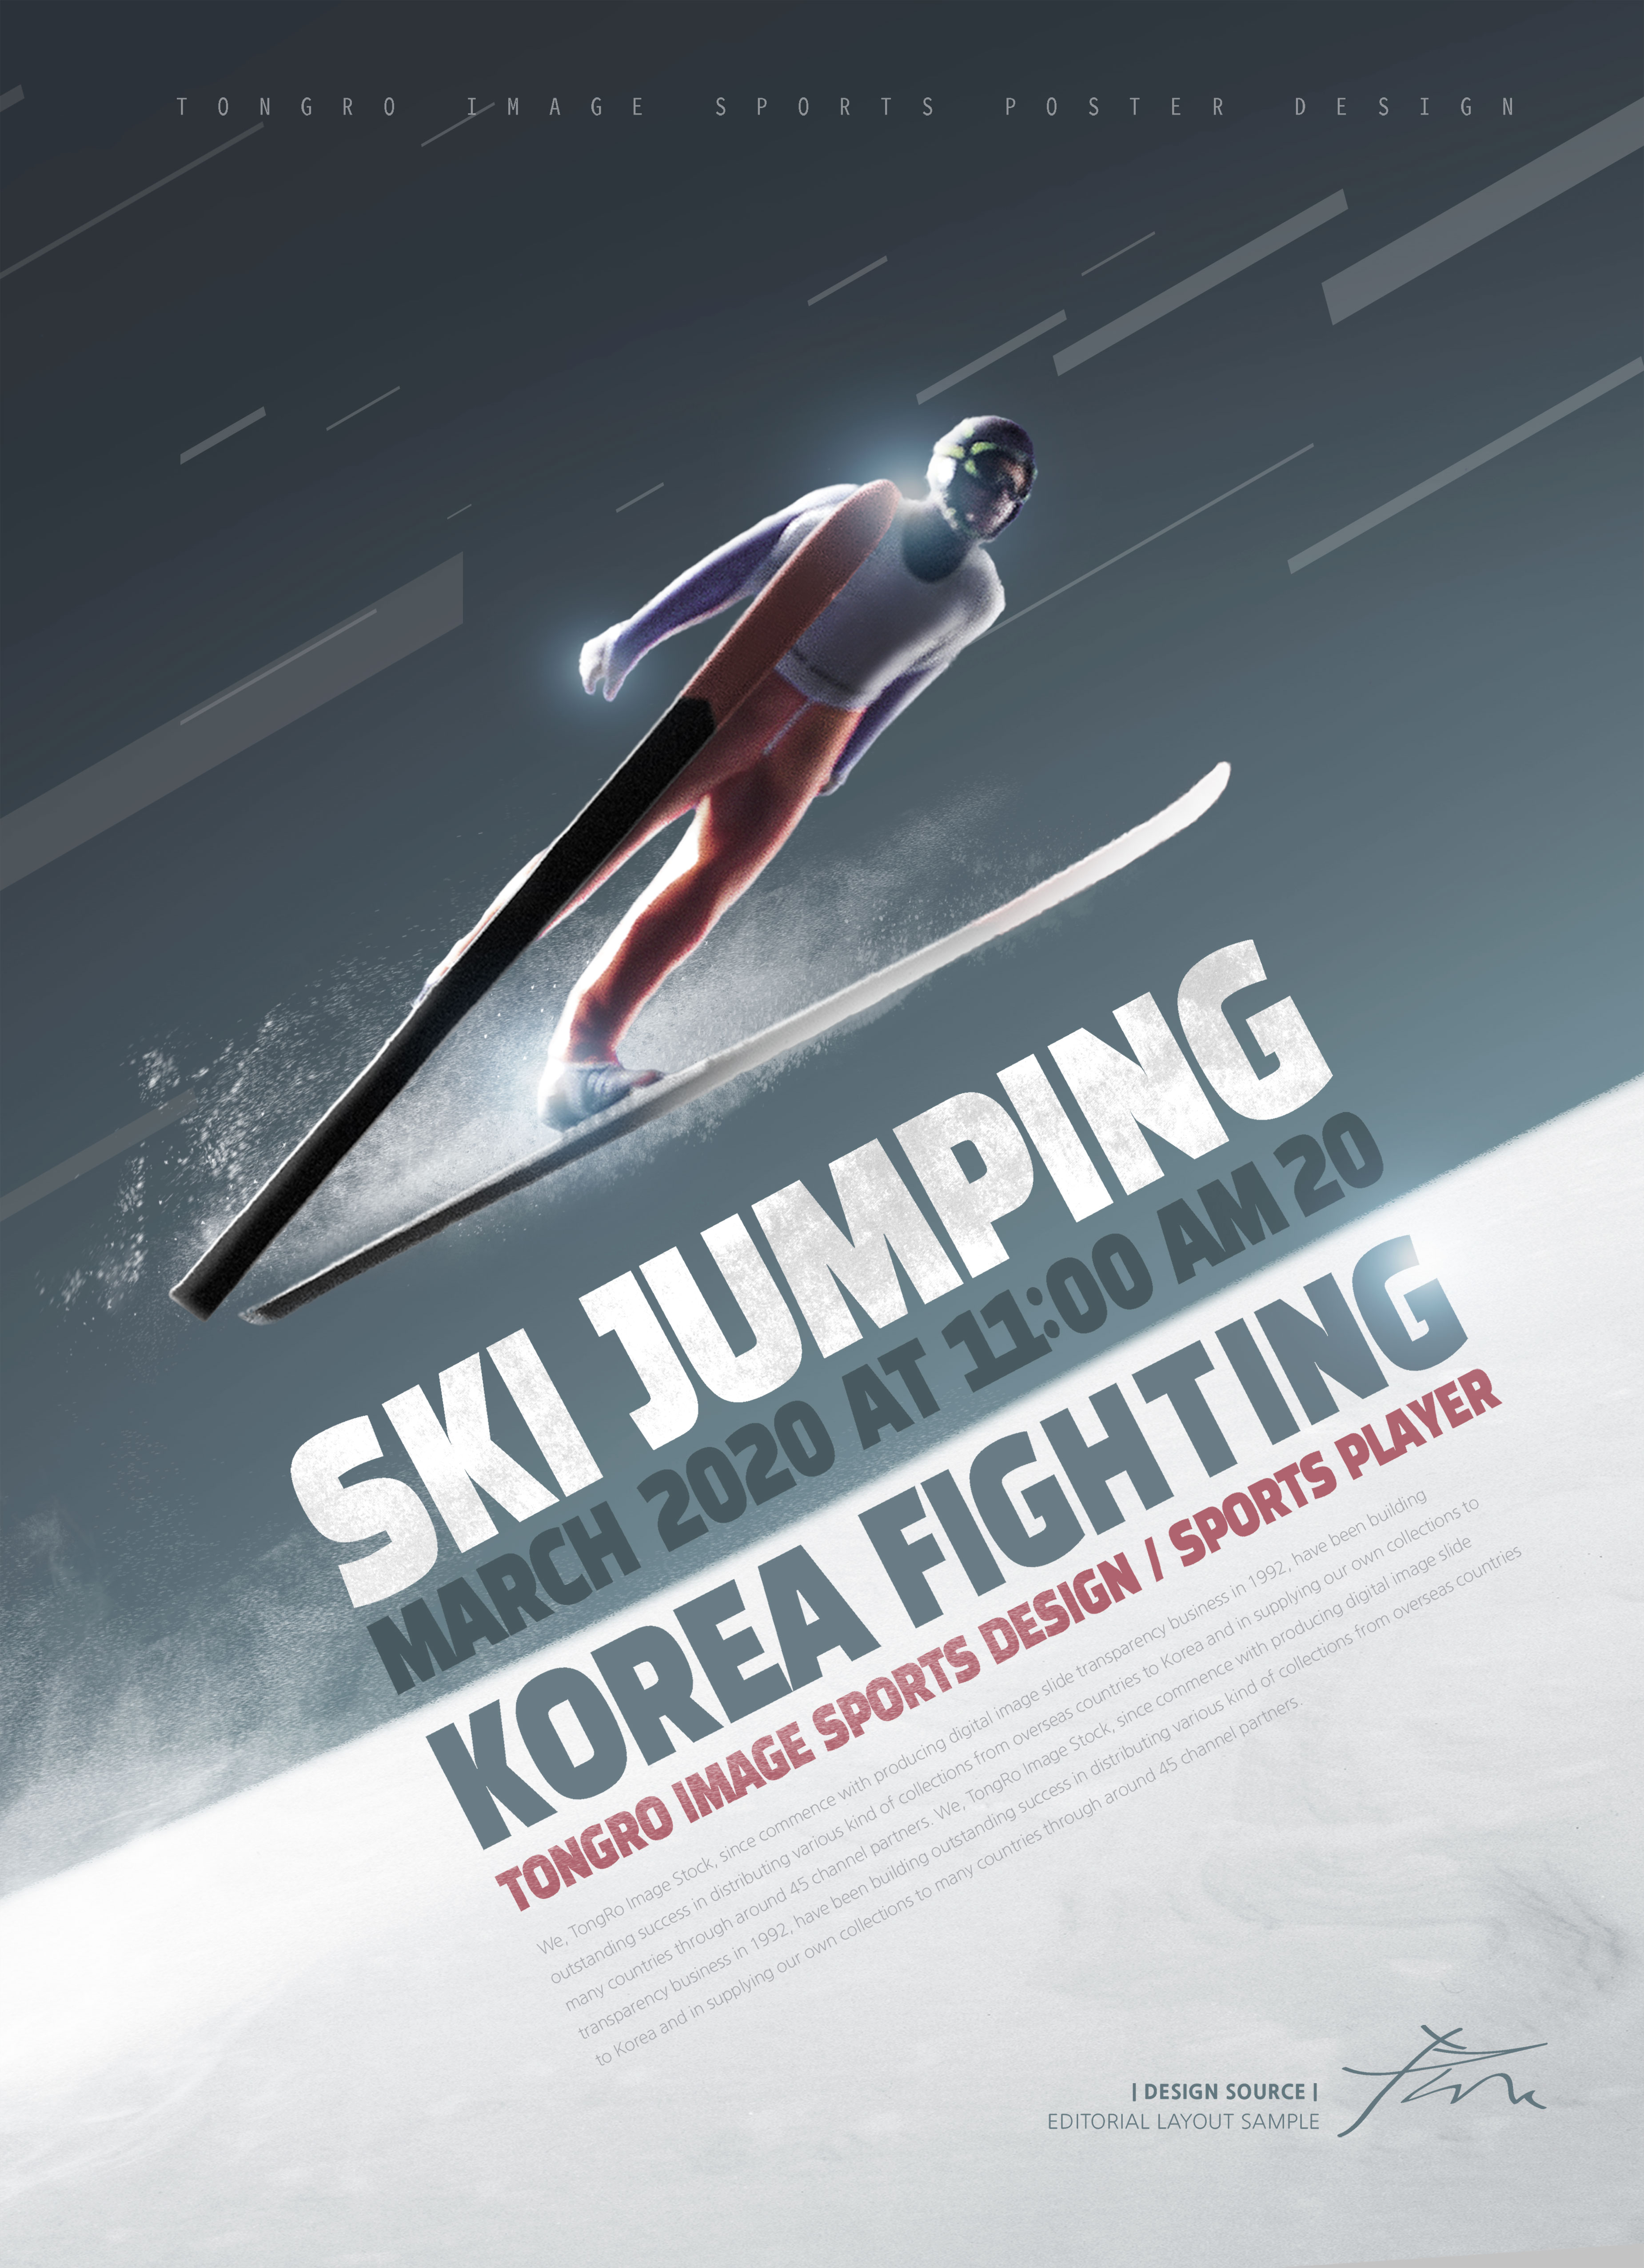 跳台滑雪体育运动宣传海报PSD素材蚂蚁素材精选[PSD]插图